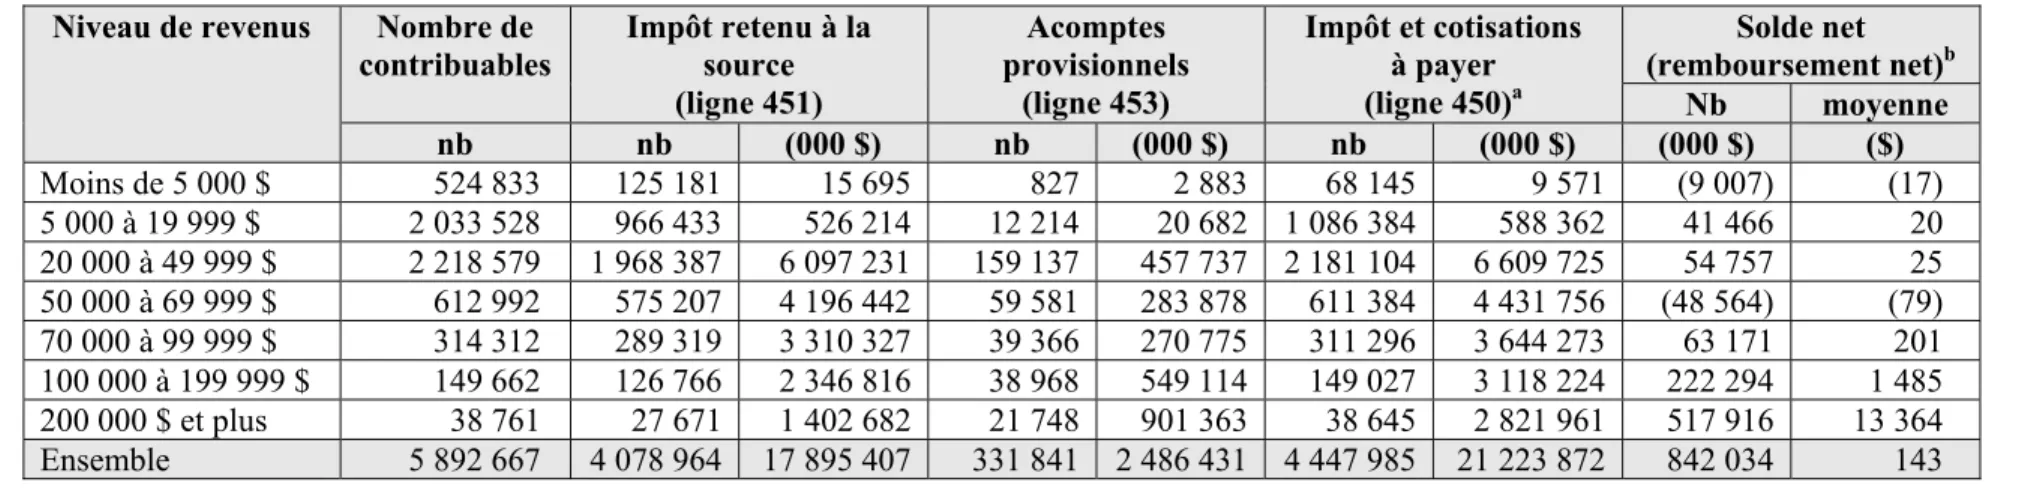 Tableau 8 :   Répartition des contribuables selon le revenu, au Québec, 2006  Niveau de revenus  Nombre de 